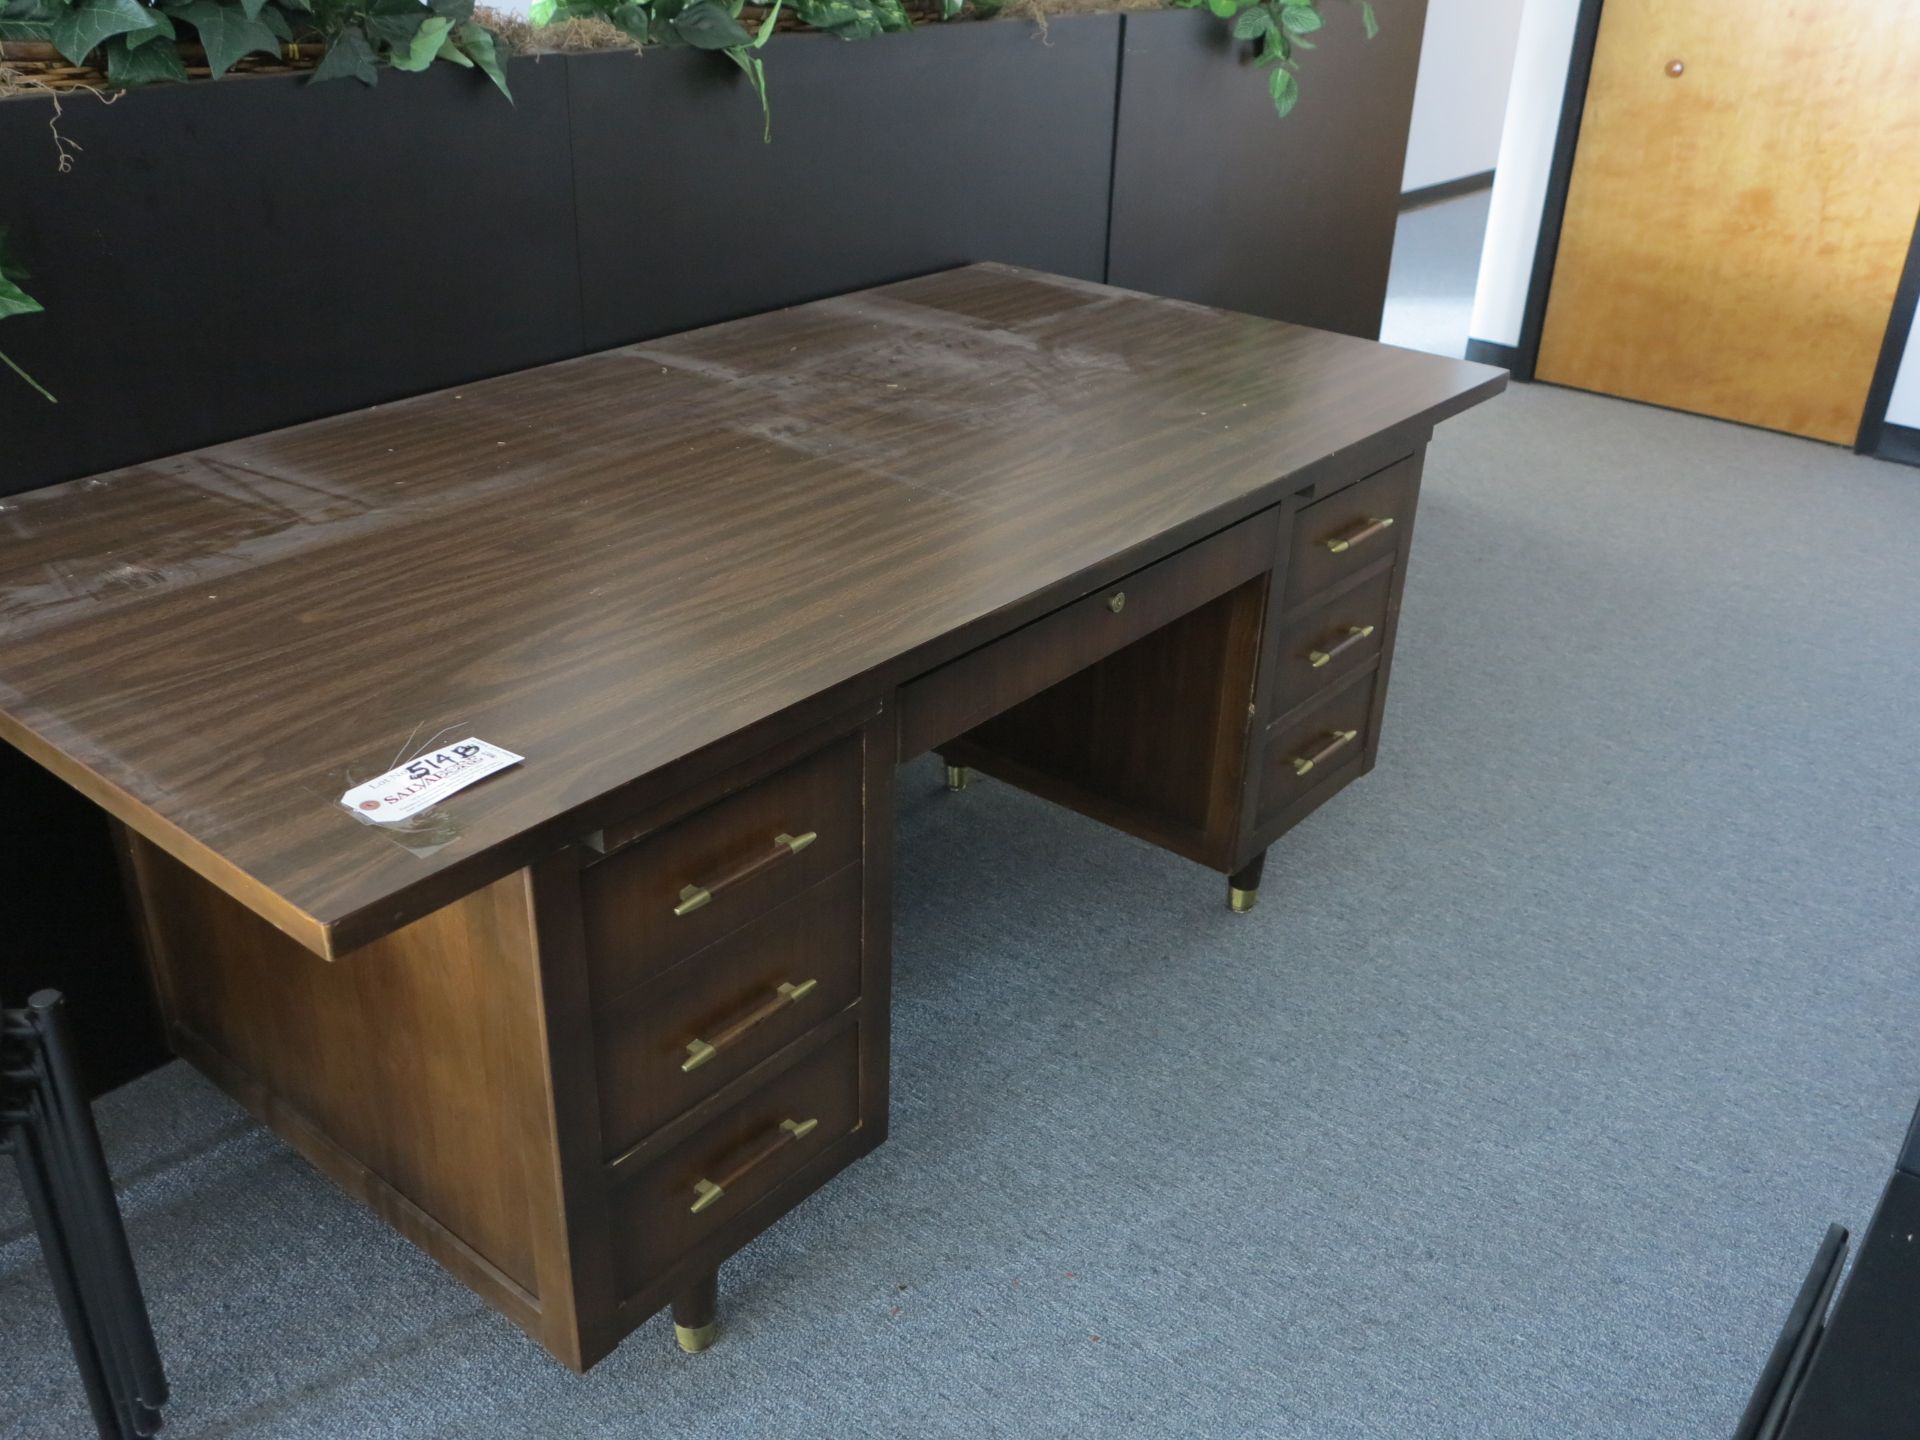 6' x 3' Wood/Laminate Desk Located in Smithfield, RI